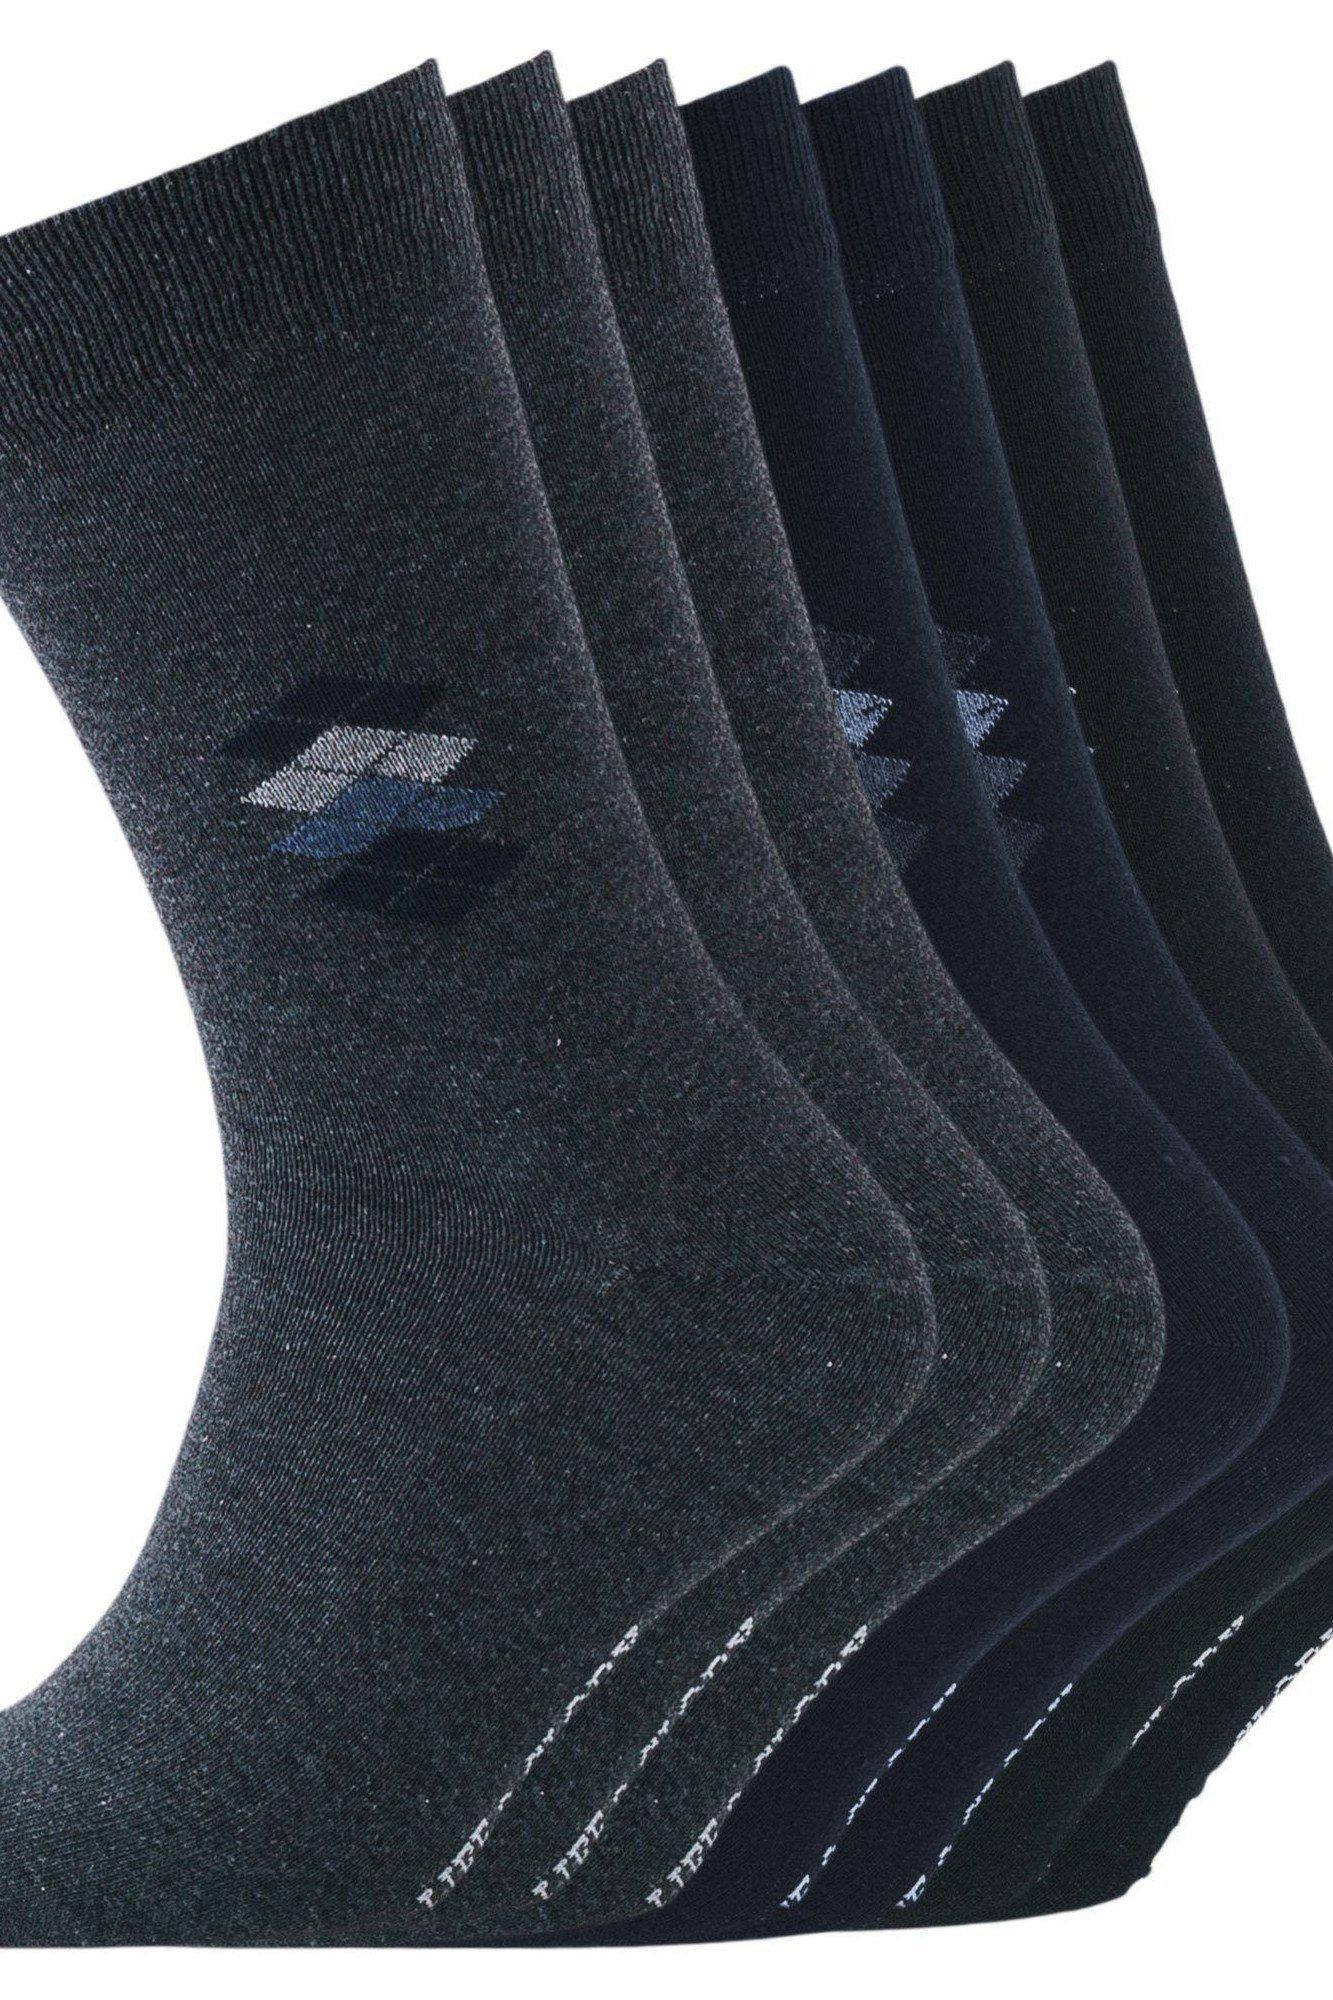 Peveril Socks (Pack of 7)